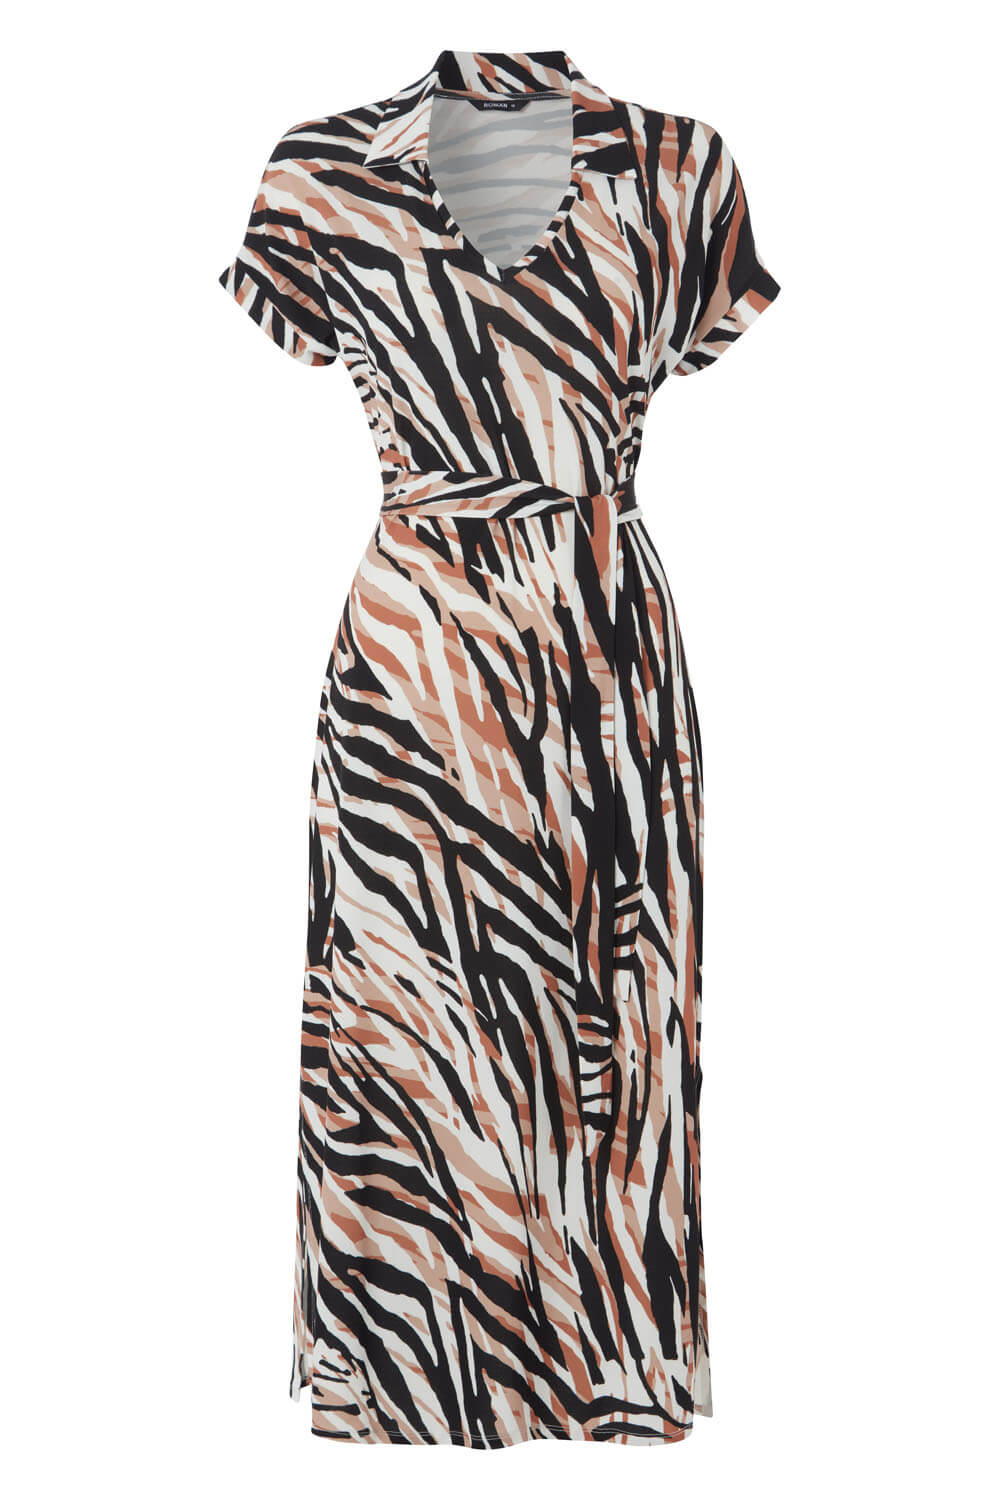 Brown Animal Print Collar Midi Dress, Image 4 of 4